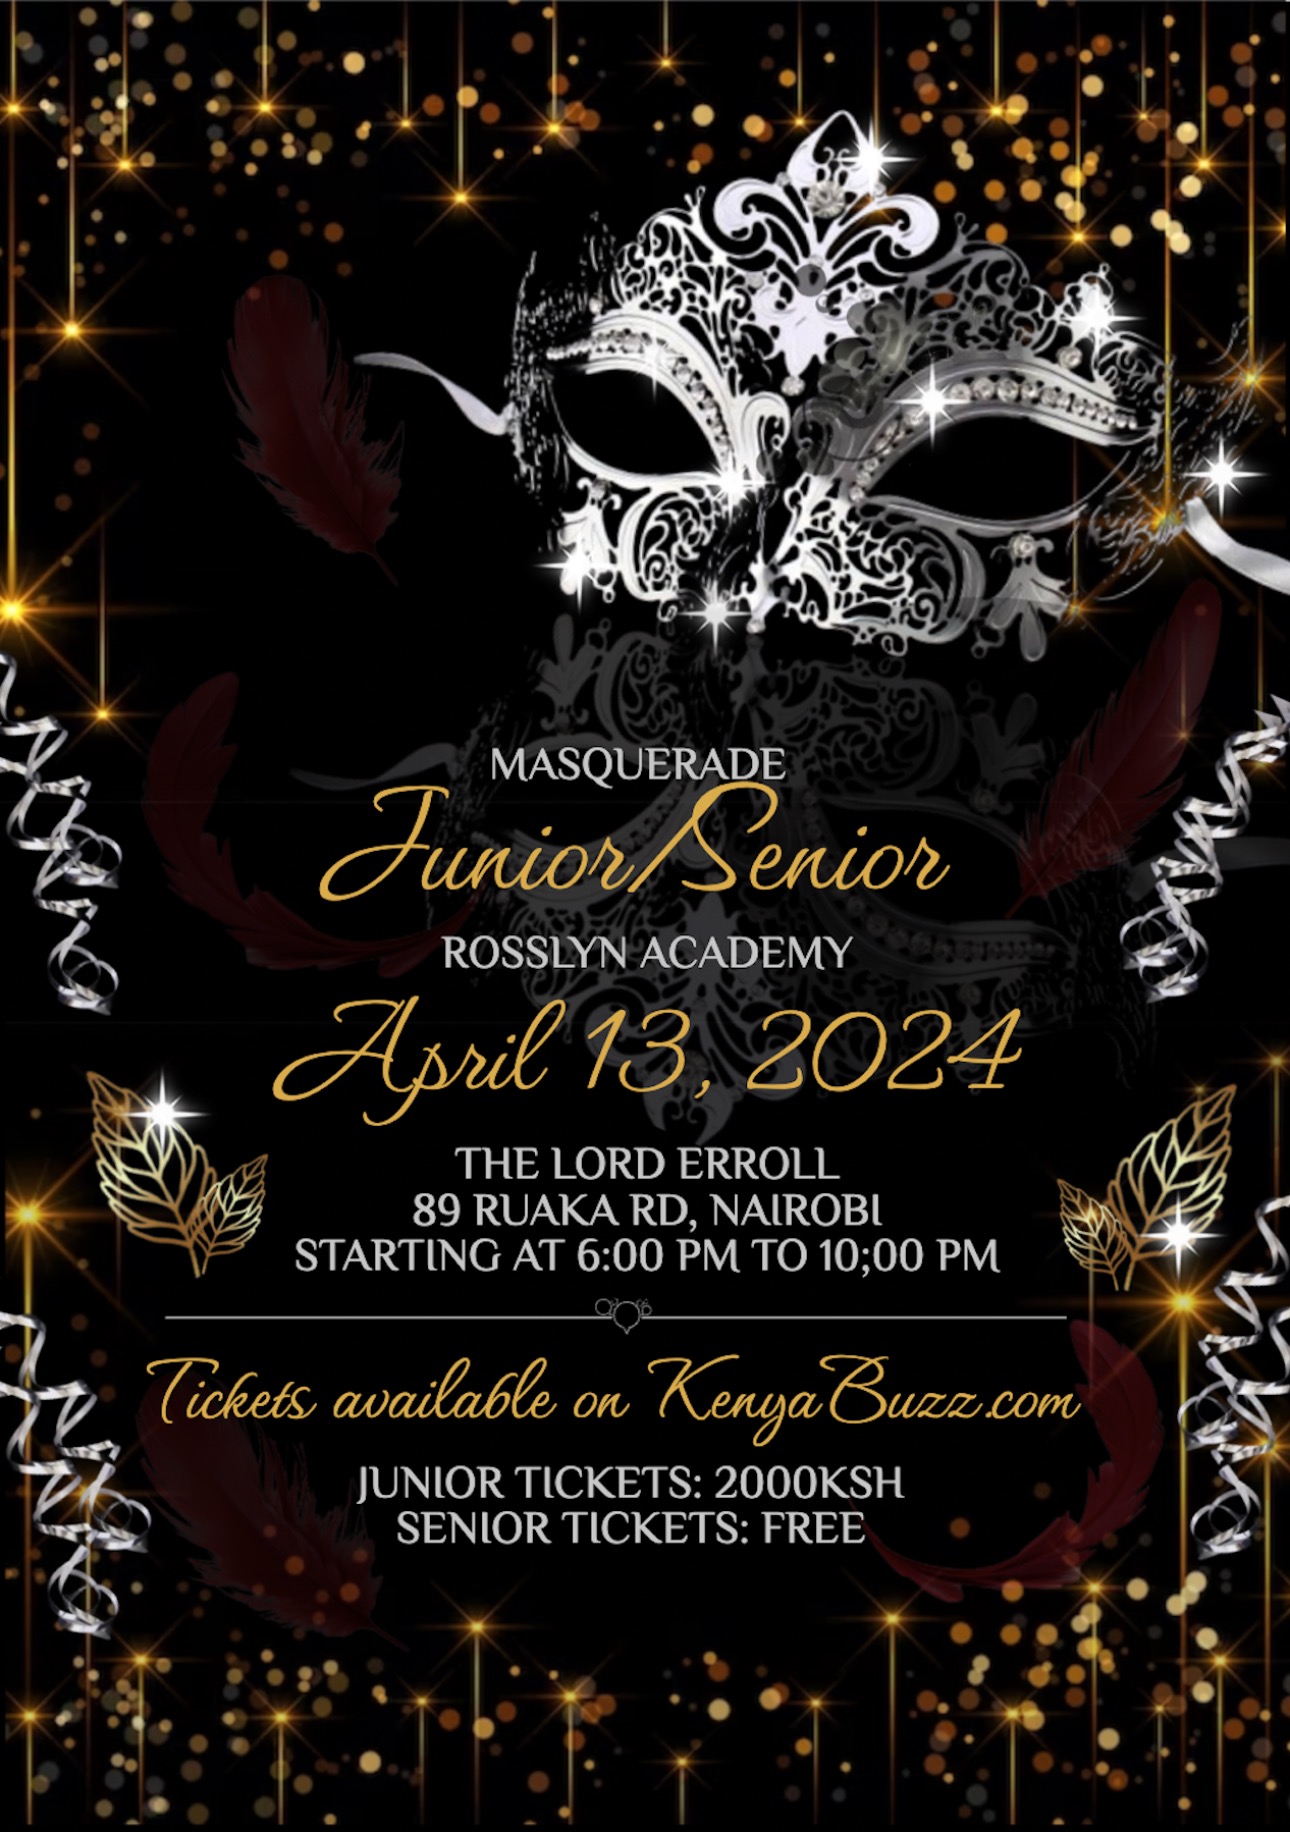 Junior Senior Masquerade Banquet